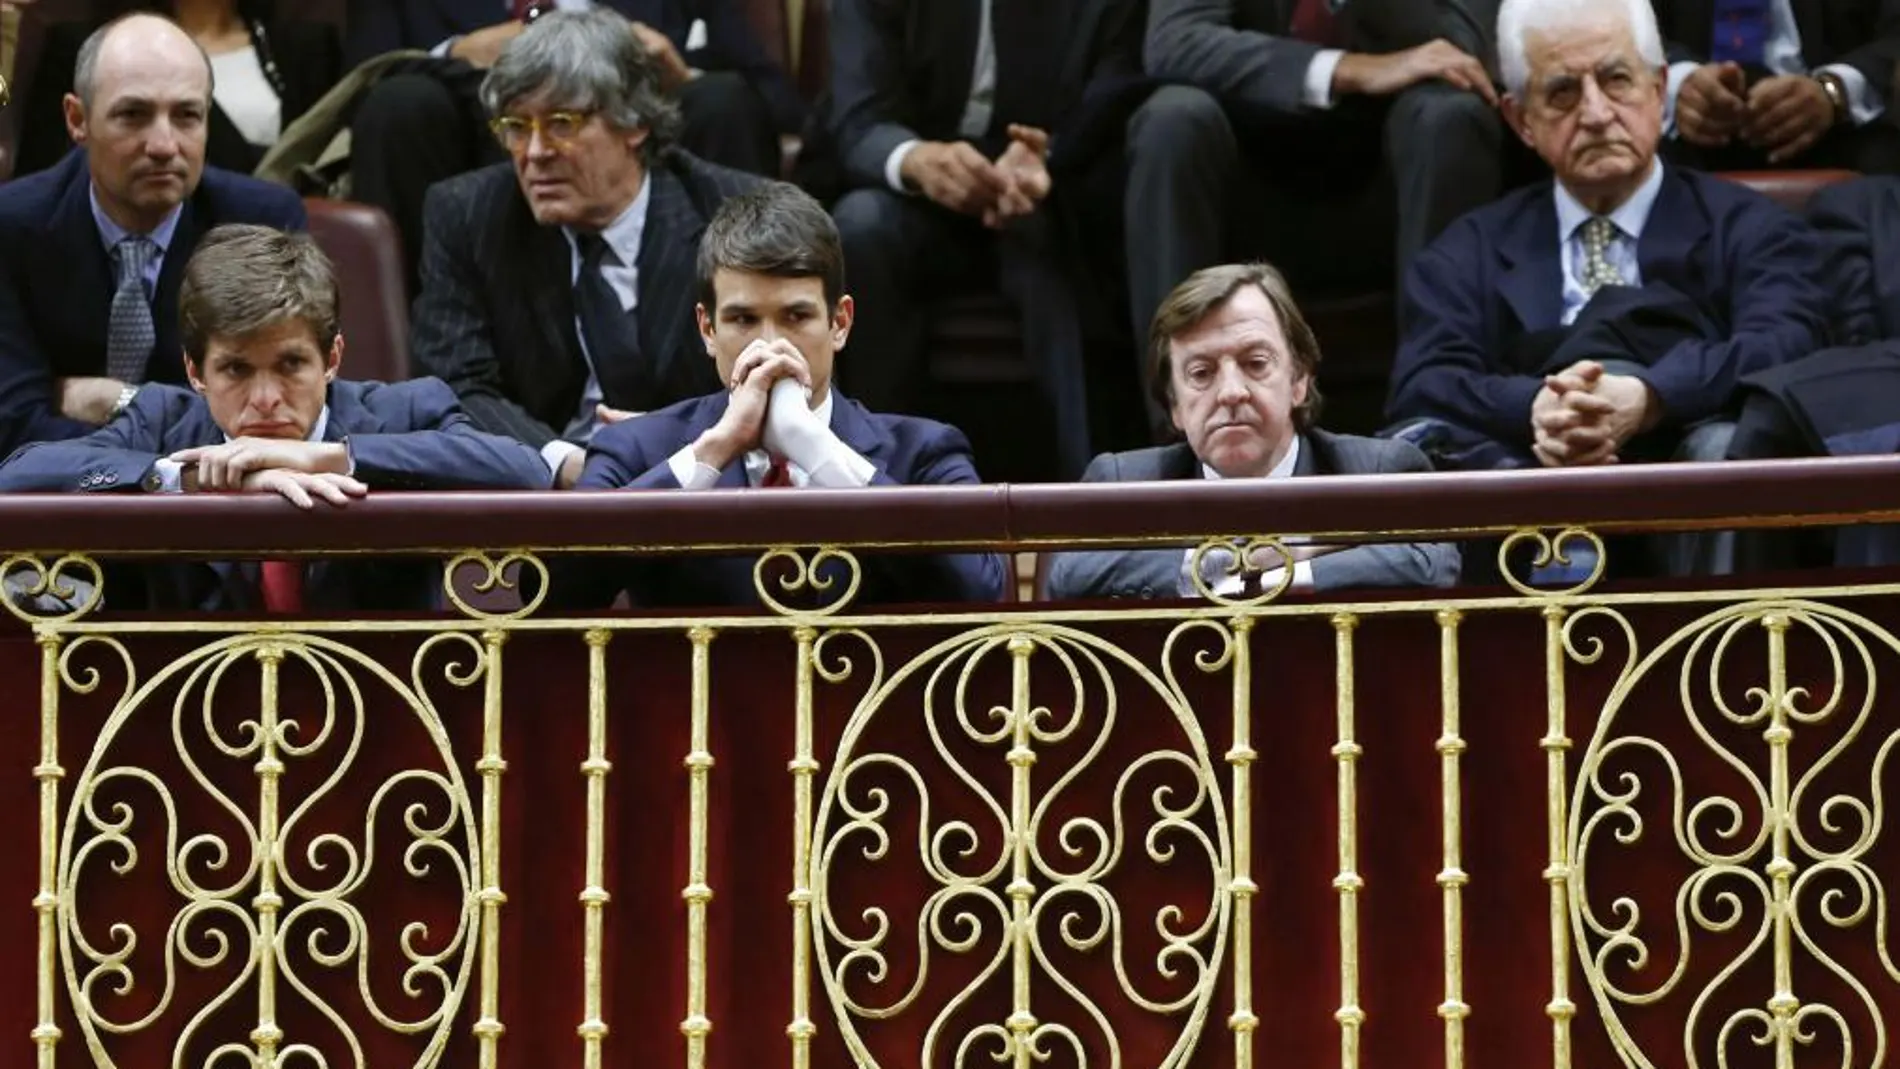 Los diestros Julián López "El Juli"(i) y José María Manzanares (2i), Curro Vázquez (2d), y Santiago Martín "El Viti"(d-atrás) asisten al pleno del Congreso